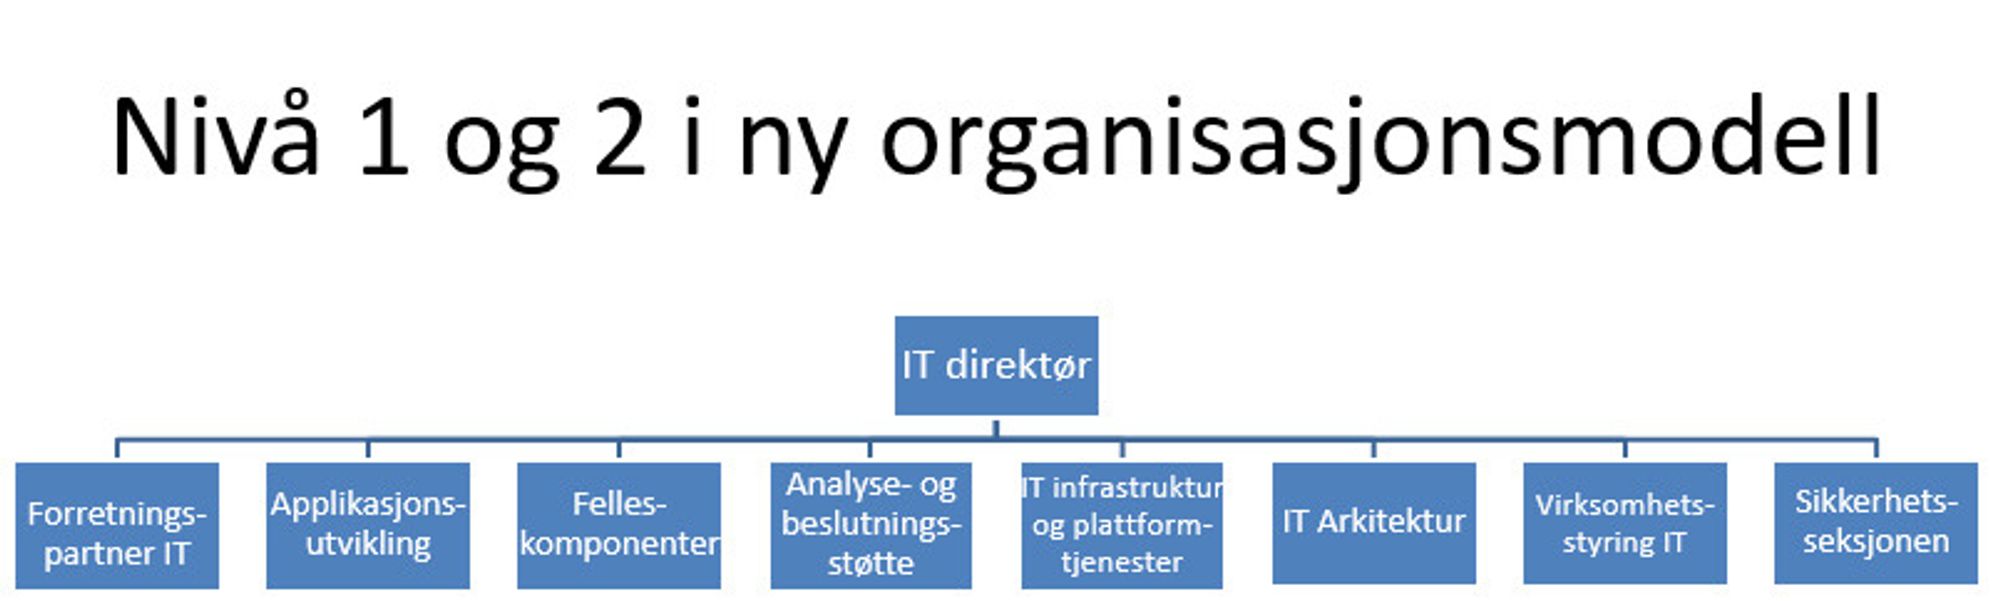 Ny organisasjonsmodell i Nav IT.